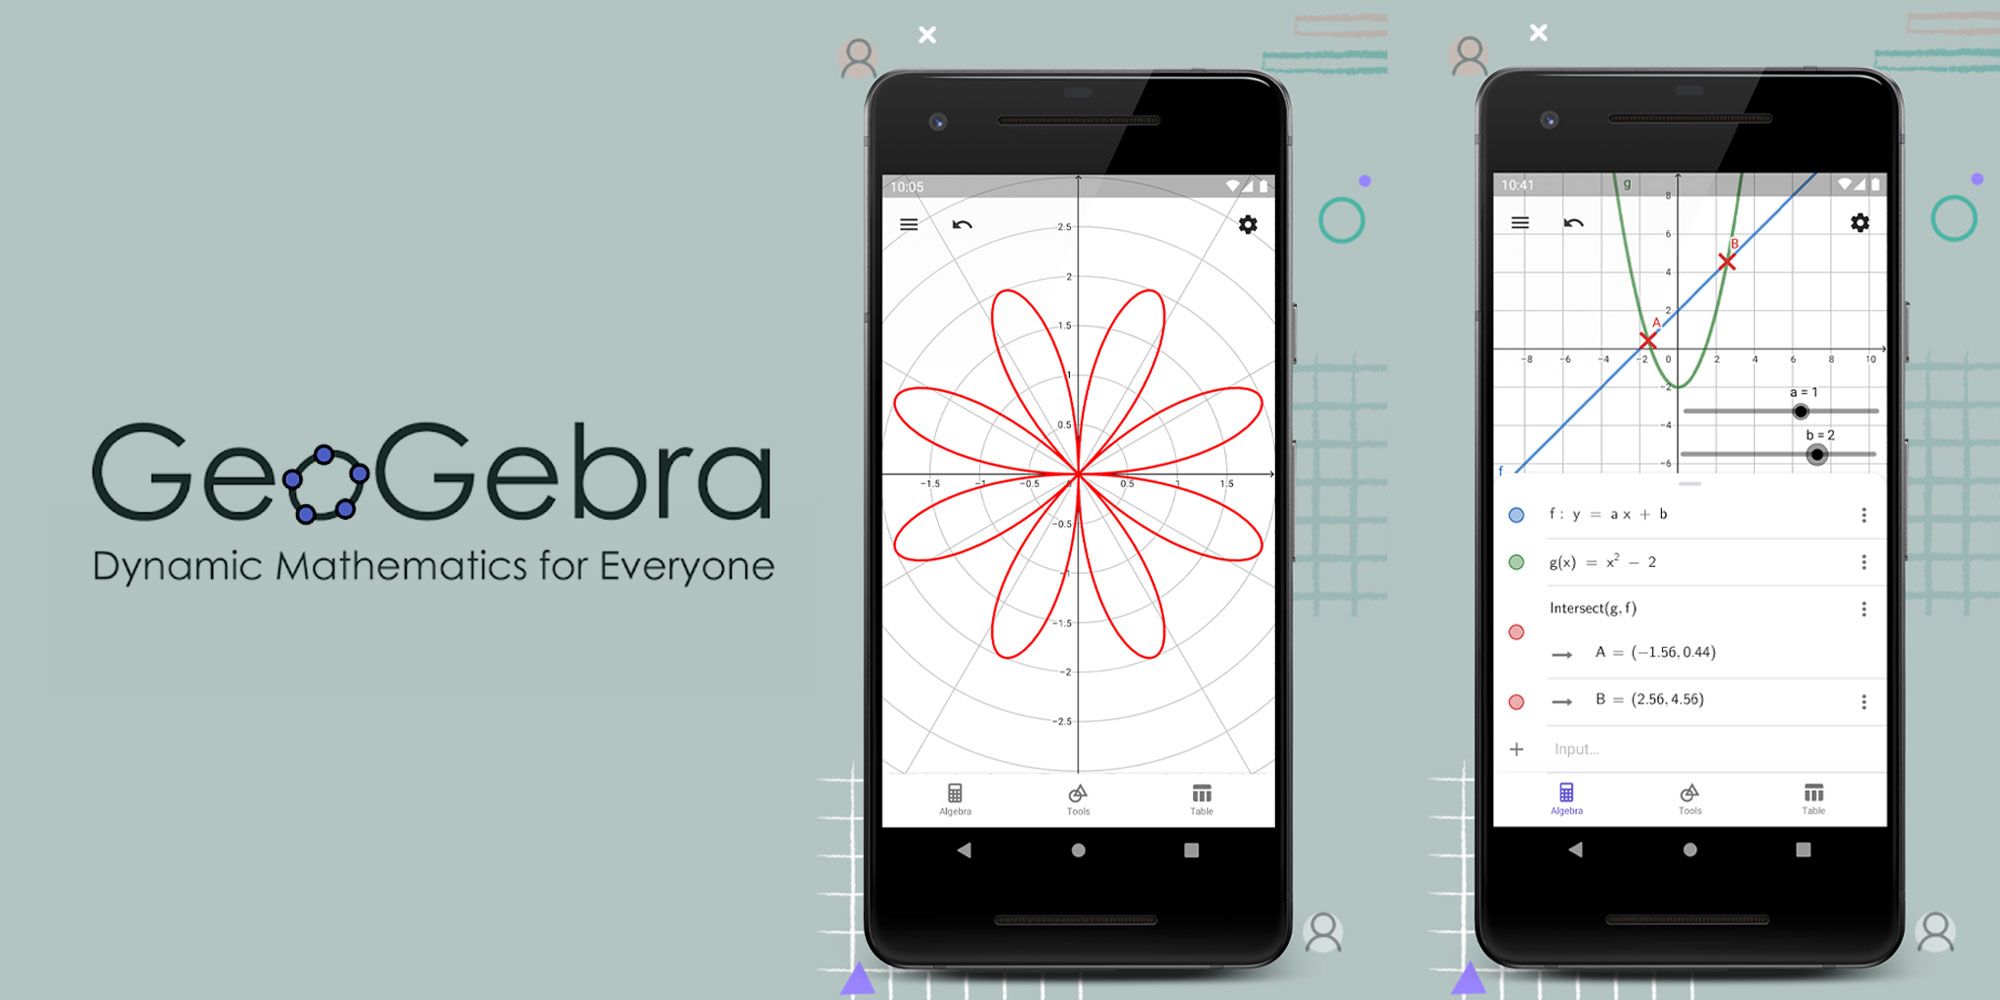 An image of the GeoGebra app in progress